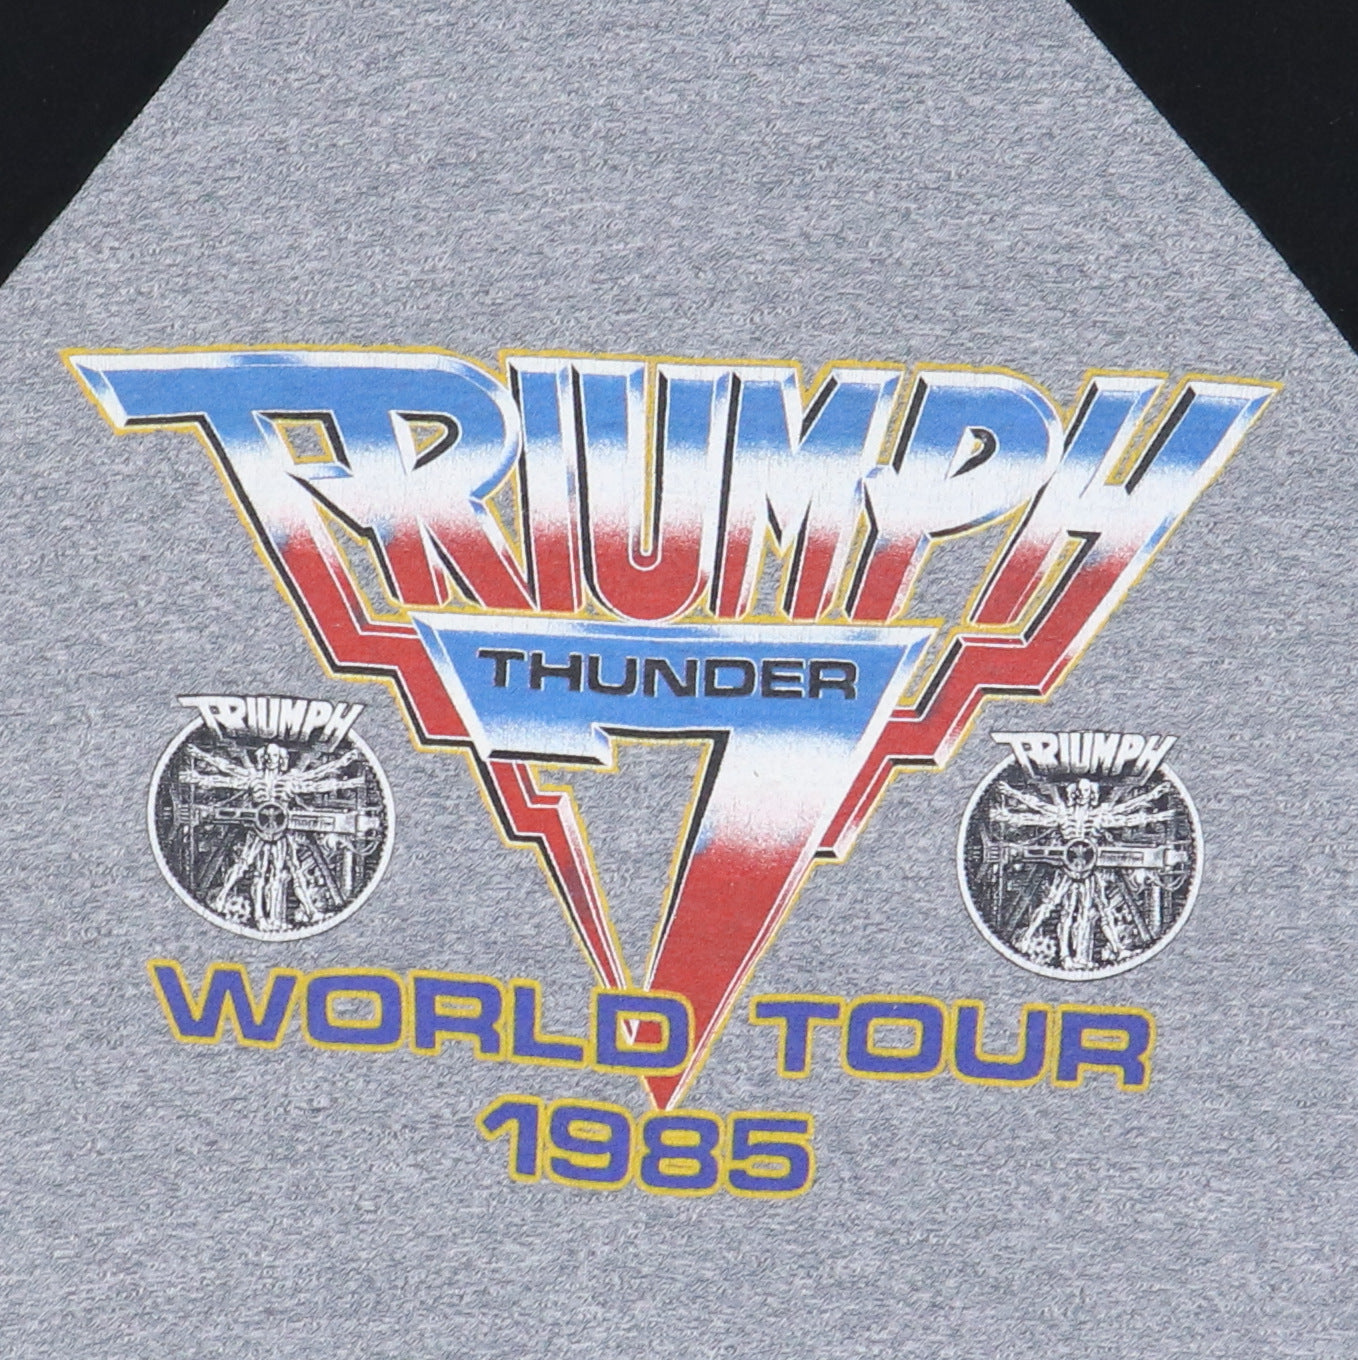 1984 Triumph Thunder World Tour Jersey Shirt